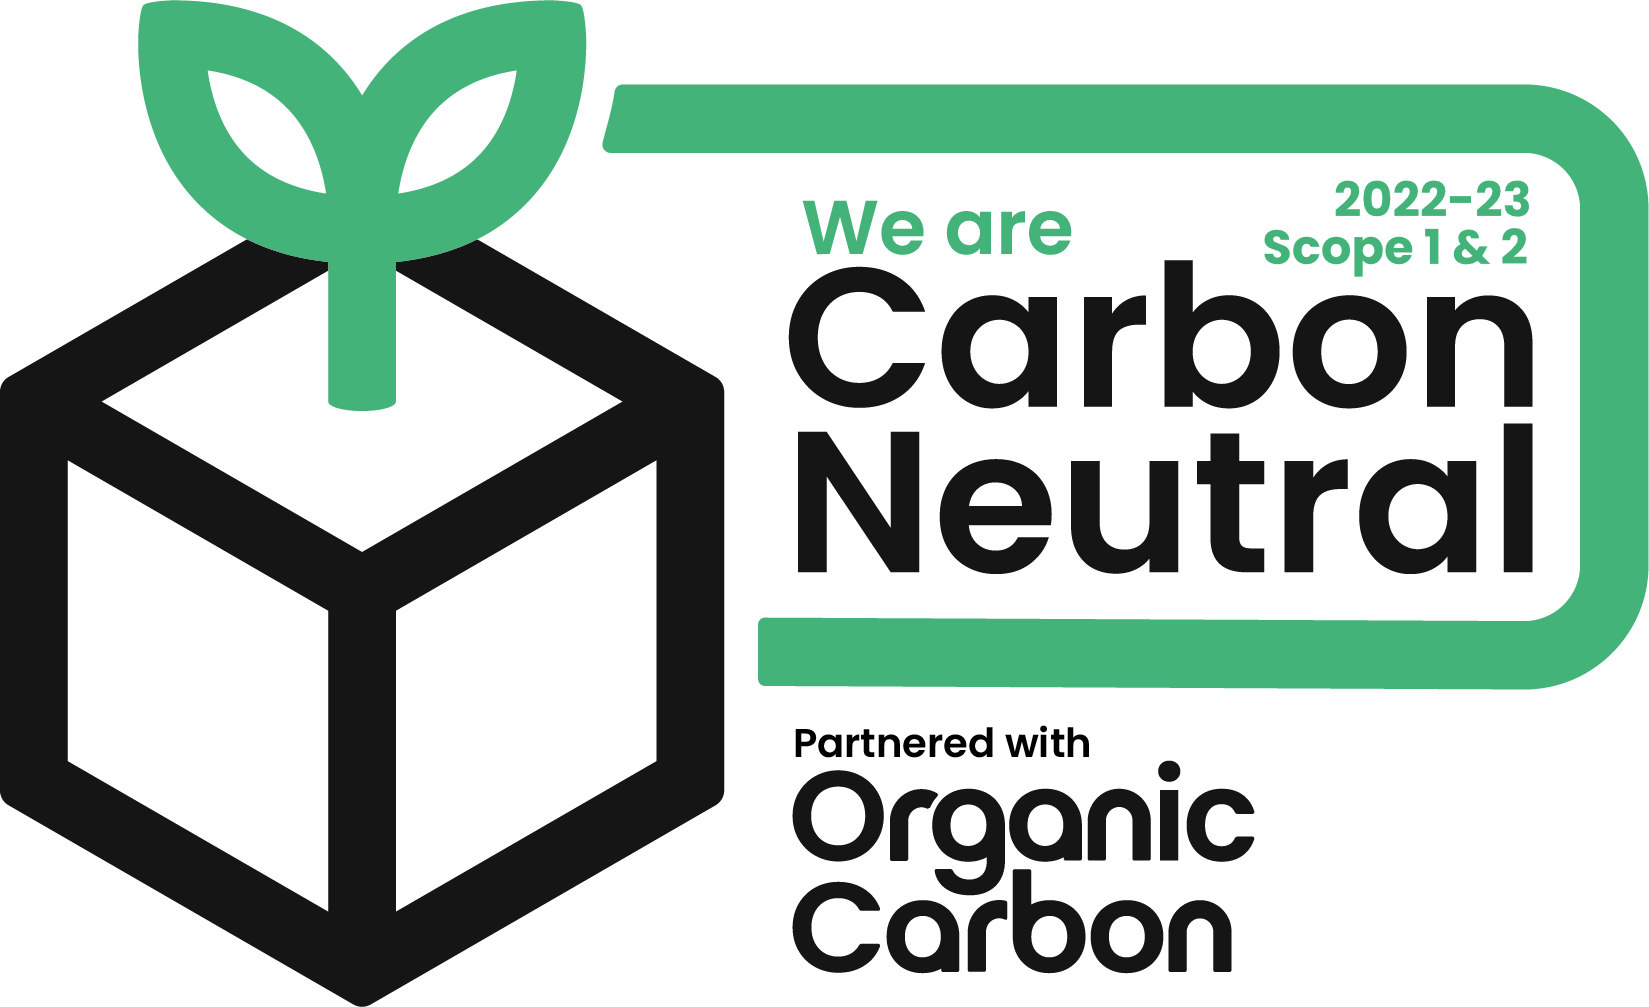 carbon neutral 2022-23